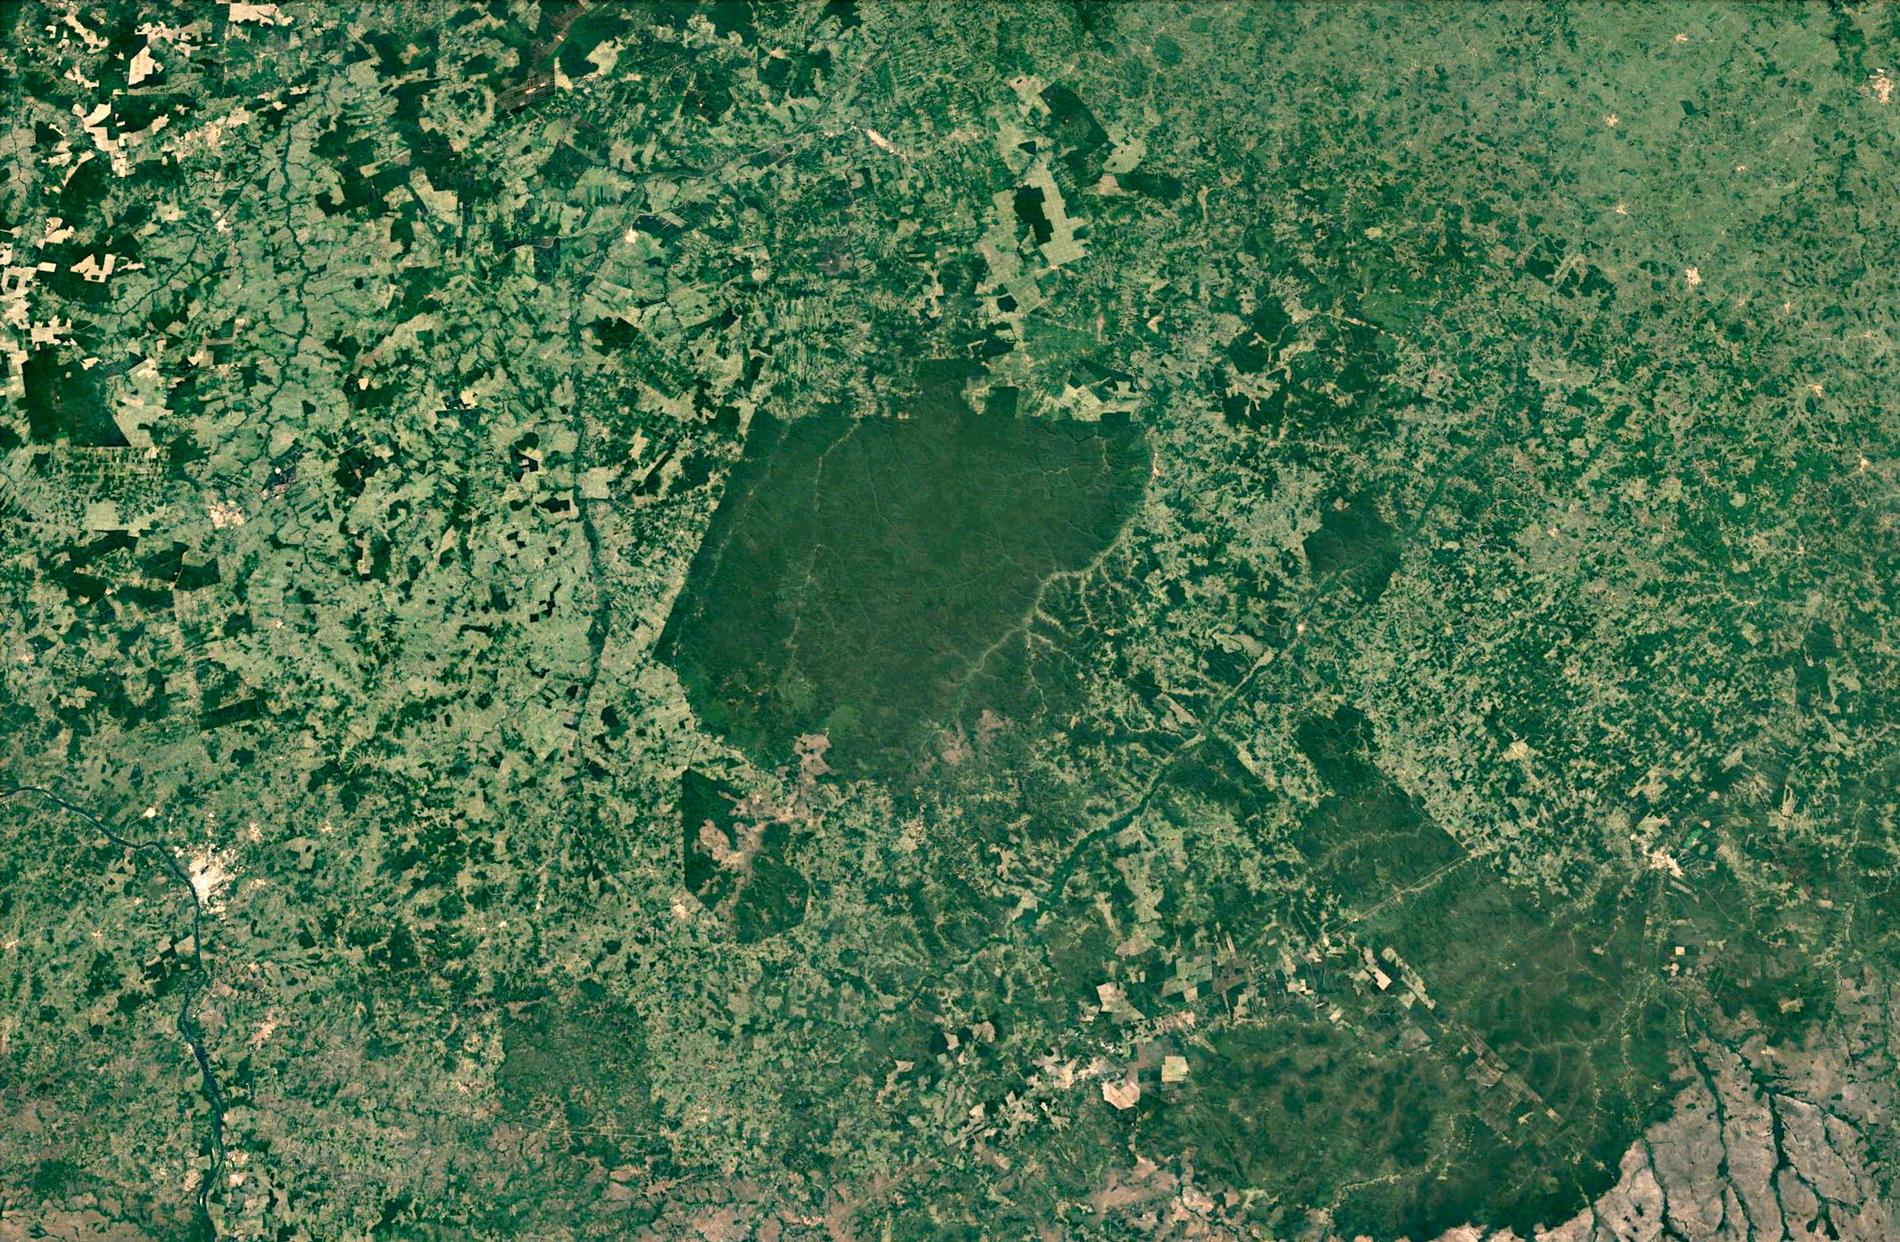 Arararibóia ligger som en ö av urskog i sydöstra Amazonas. Åt alla håll omges reservatet av skövlad mark. Forskarna tror att det är här regnskogens omvandling till savann kommer att börja.